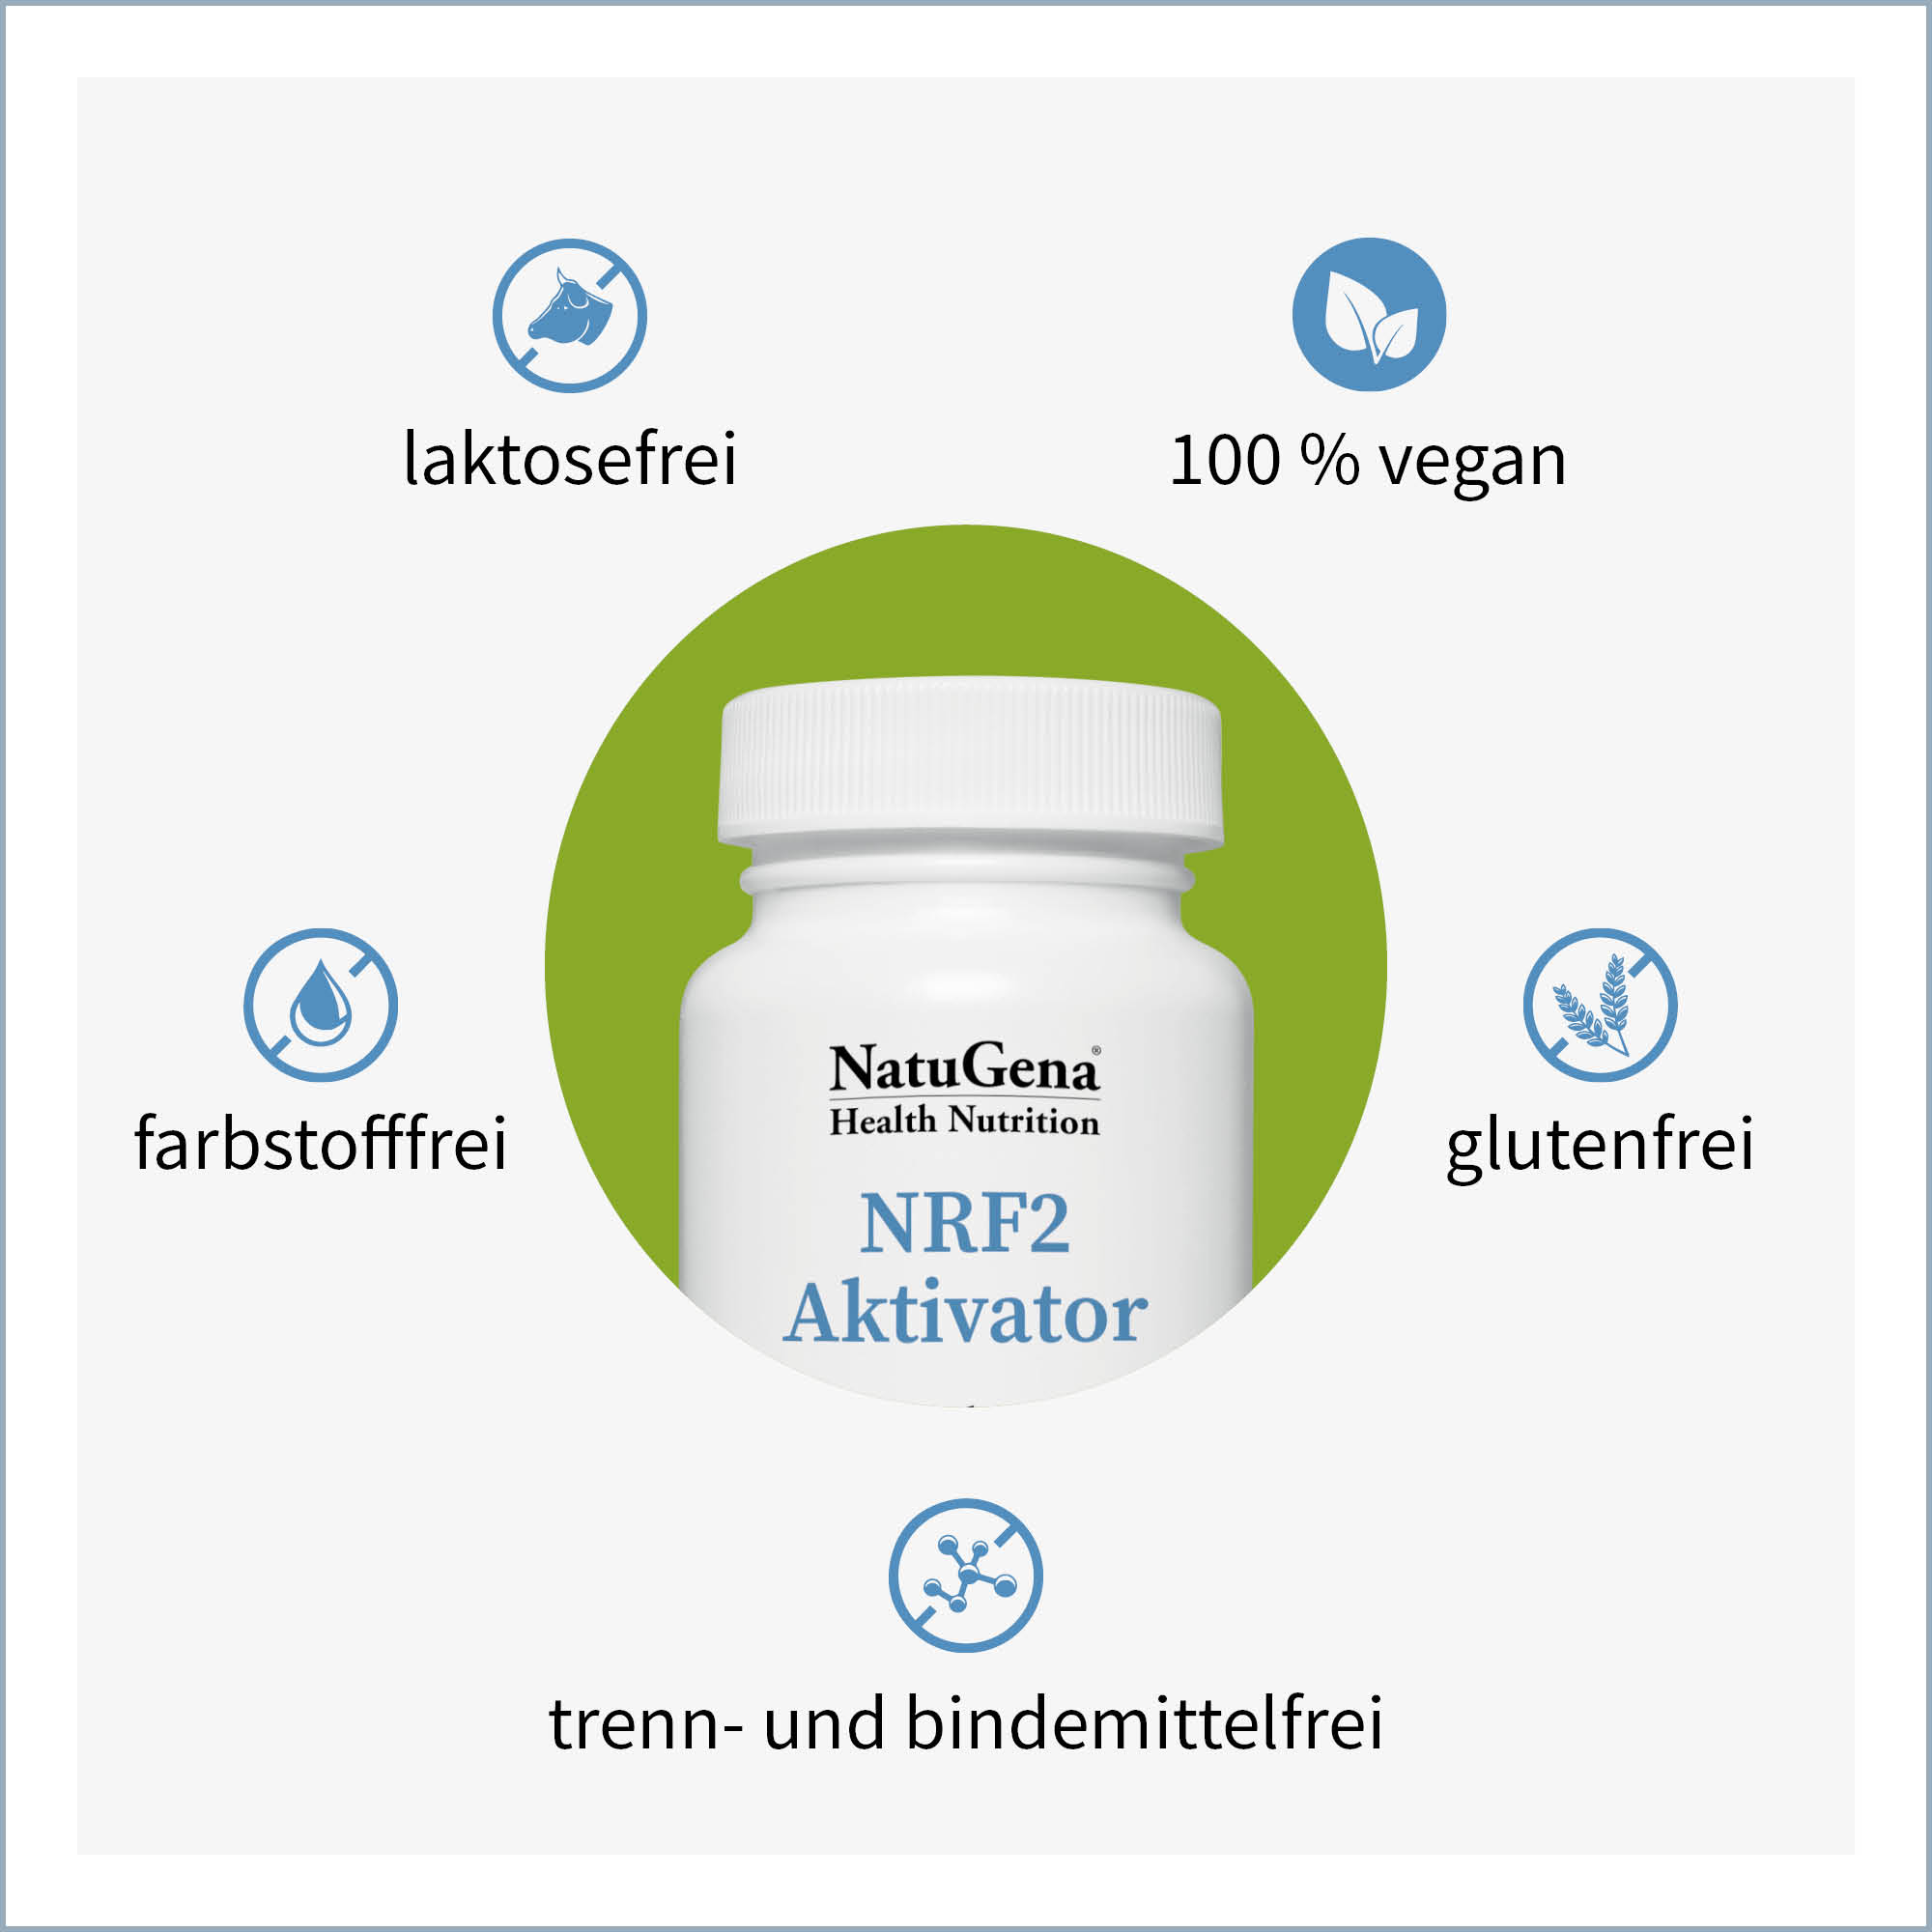 NRF2 Aktivator von NatuGena - Produkteigenschaften